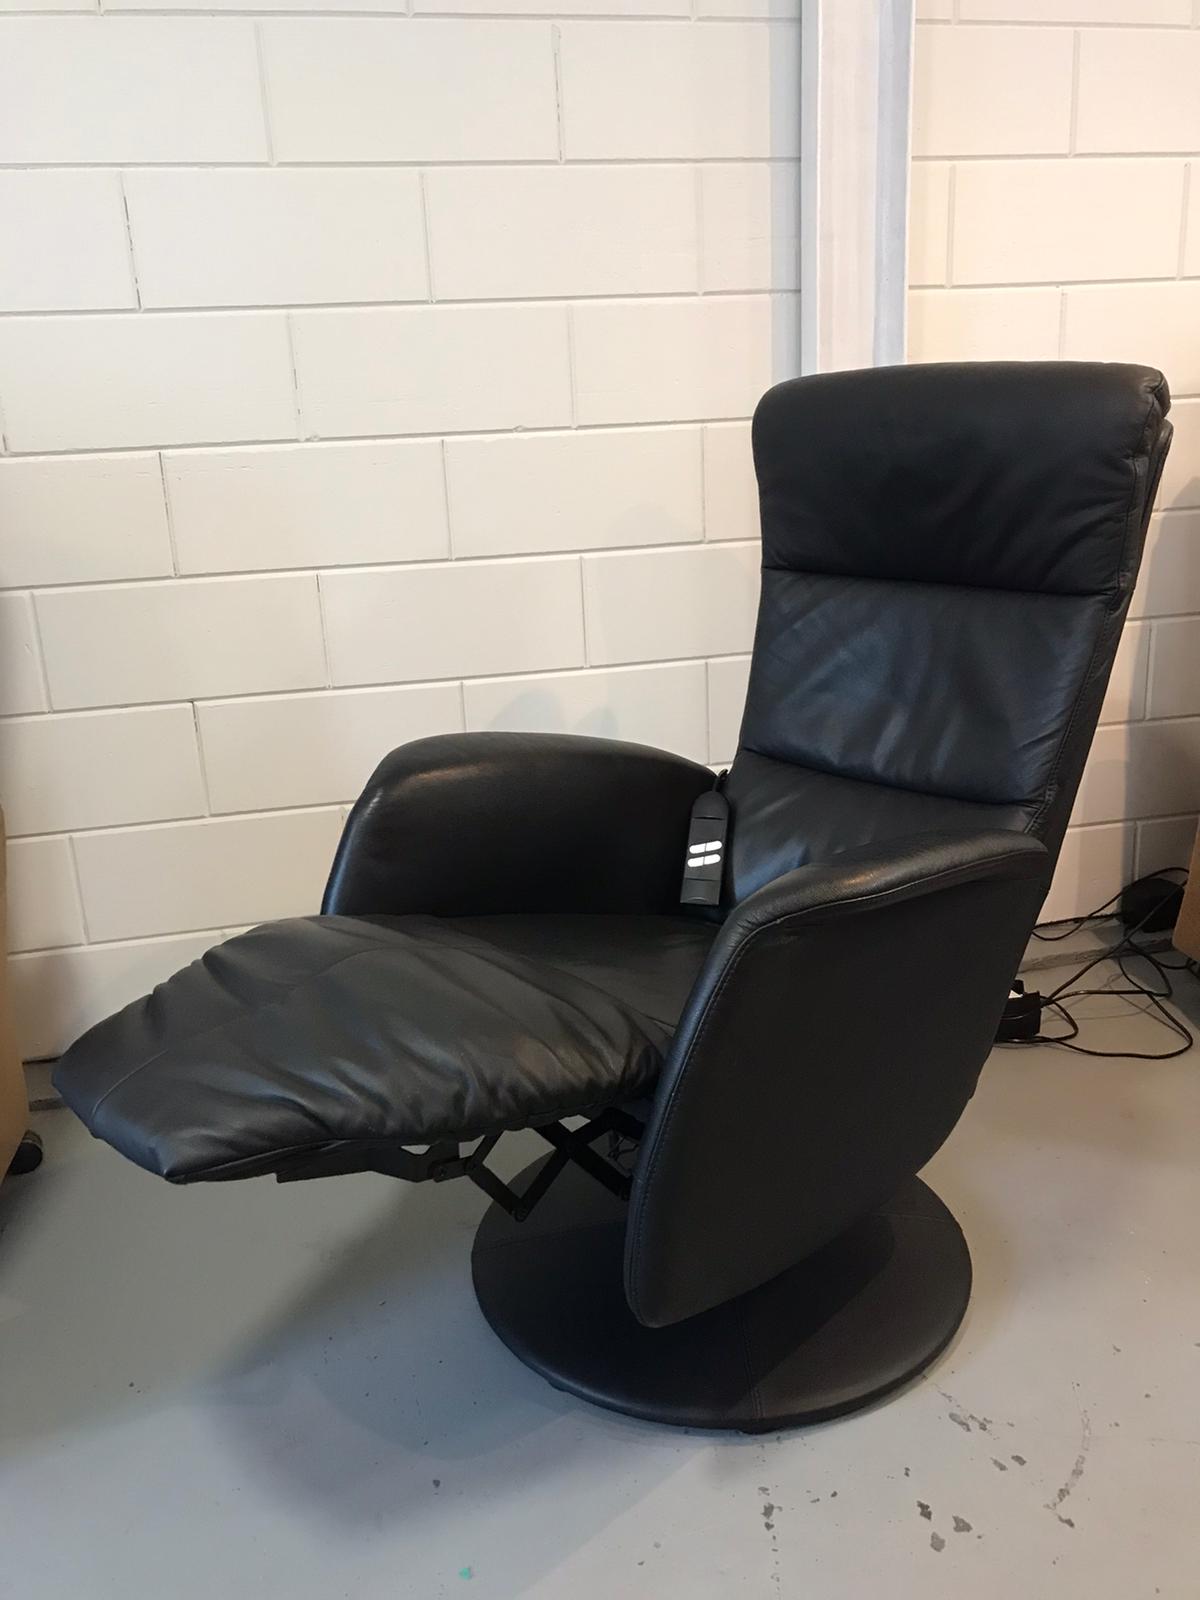 Premedicatie Knooppunt angst Draaischijf Stawett Relax fauteuil Zwart leer - Sta op stoel Alkmaar